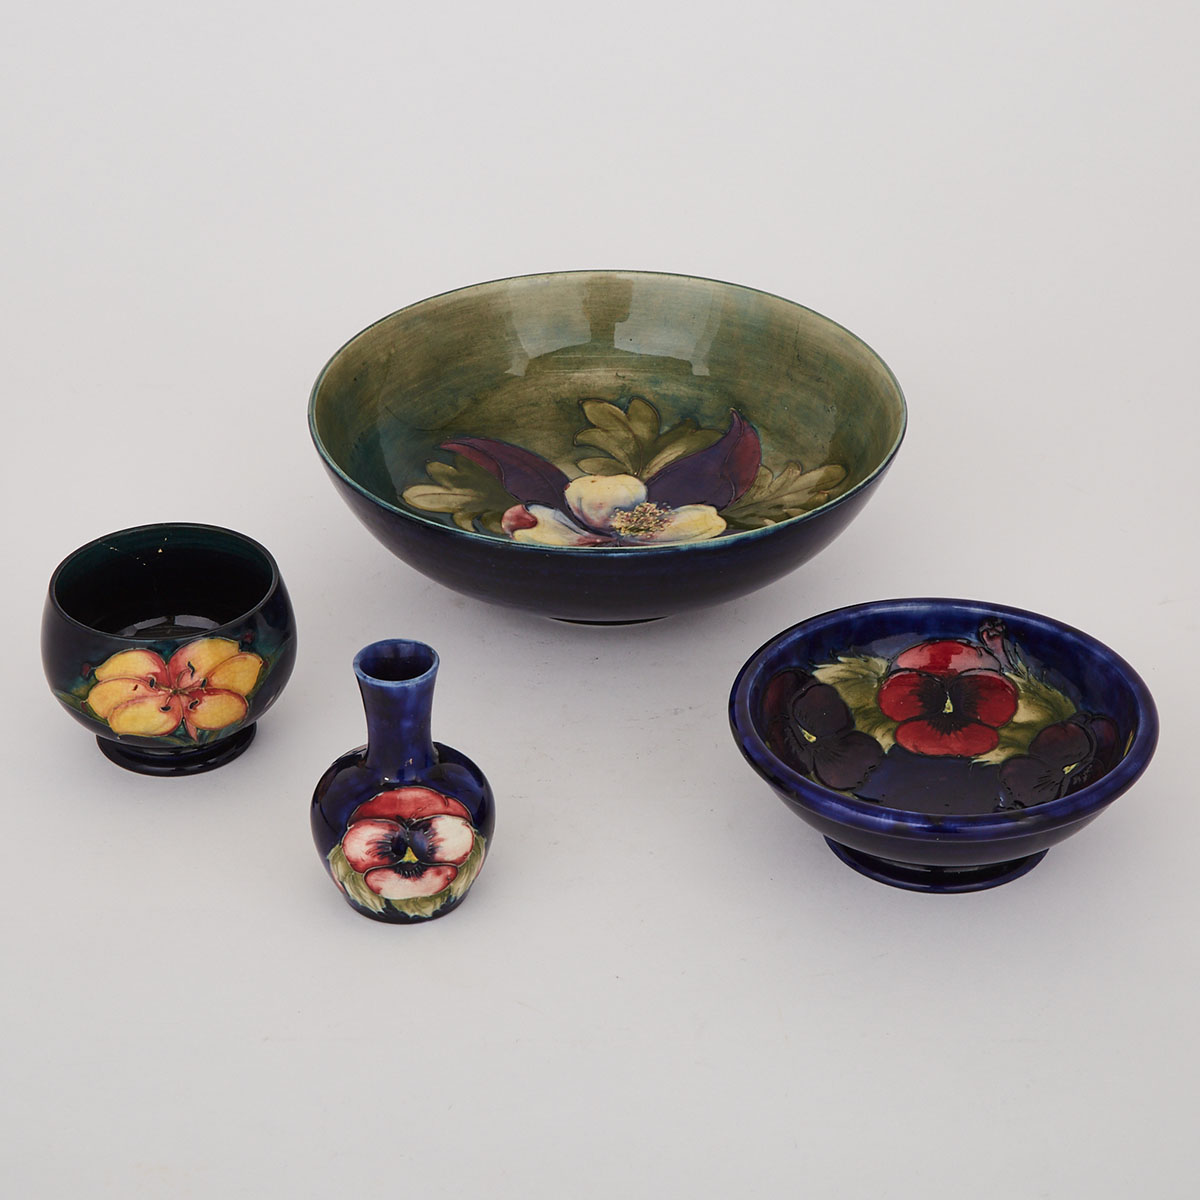 Three Moorcroft Bowls and a Small Vase, c.1925-1950